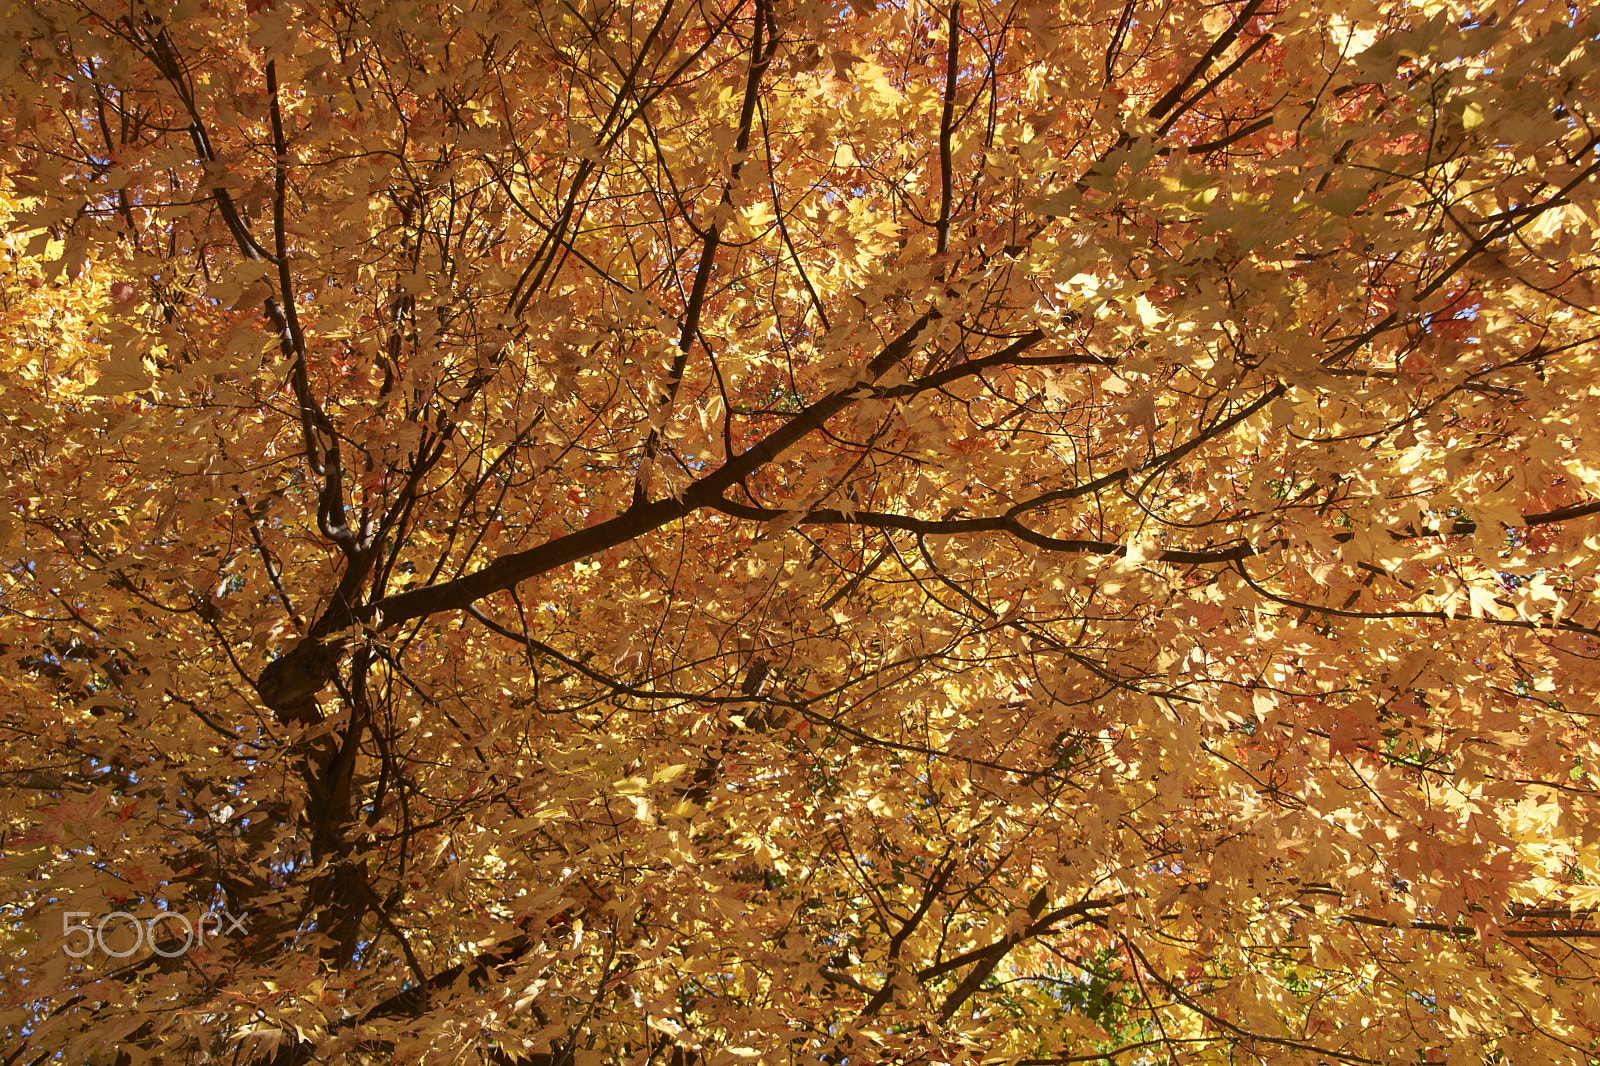 Sony SLT-A65 (SLT-A65V) sample photo. Colour of autumn photography